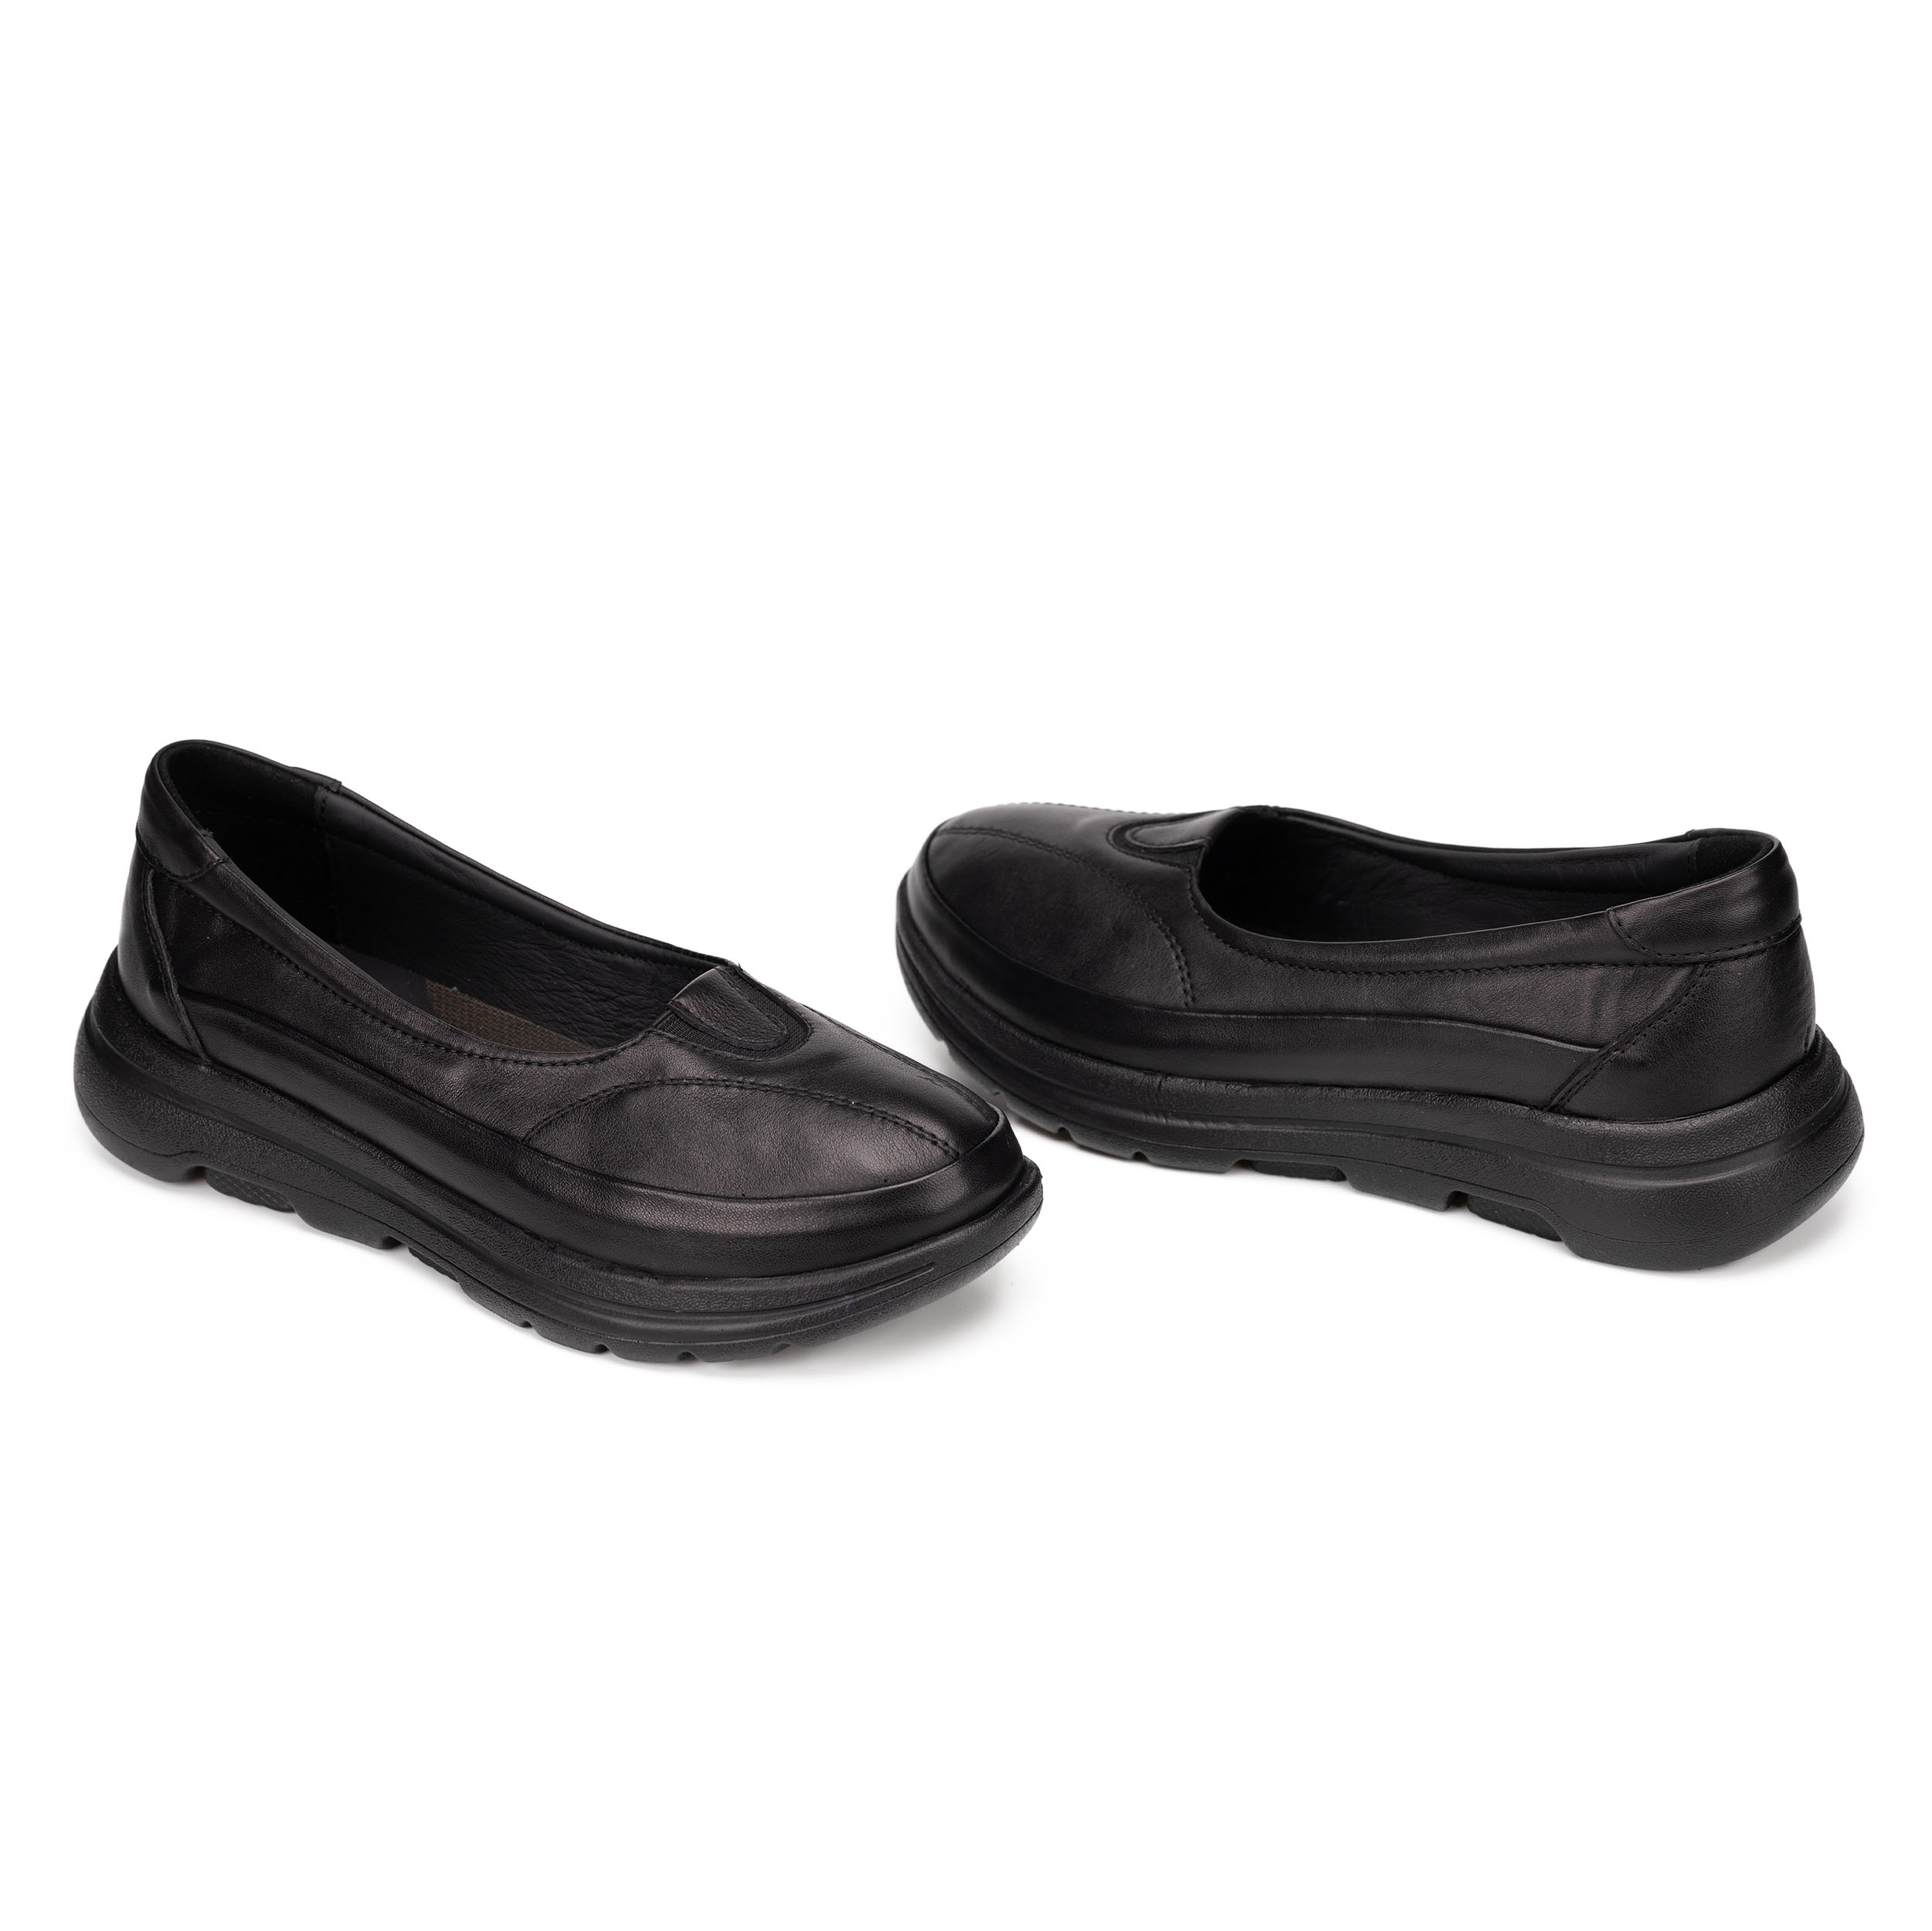 Kadın Hakiki Deri Anatomik Hafif Konfort Günlük Ayakkabı, Renk: Siyah, Beden: 36